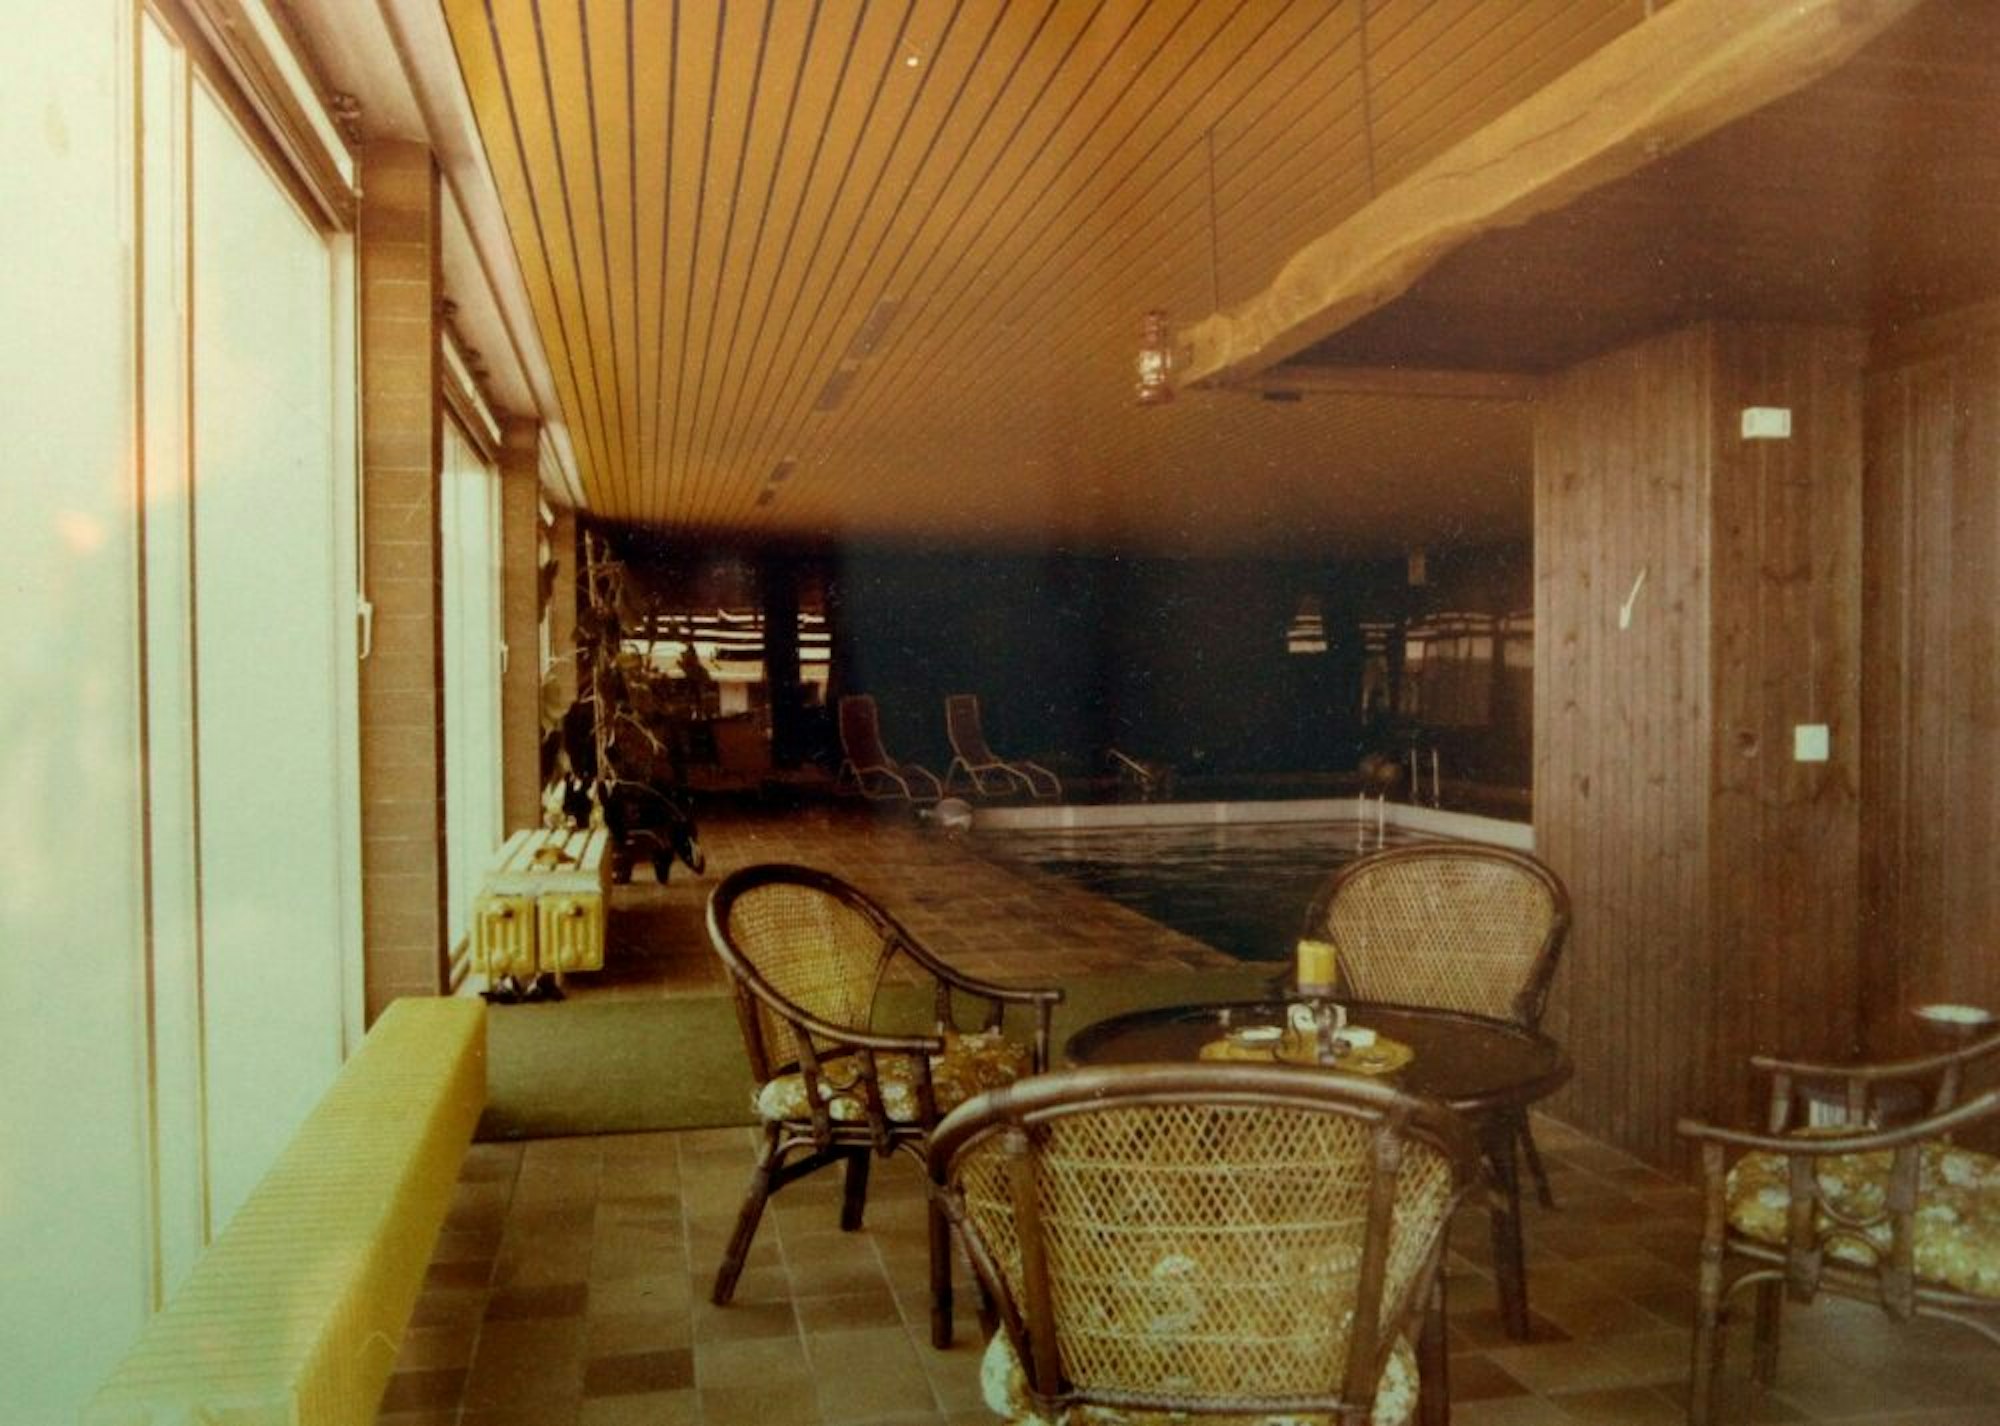 Seit 1974 wurde ein Schwimmbad in dem Gebäude öffentlich genutzt. Rolf Morawetz baute es zu einem Wohnhaus um. Zuletzt wohnte der Schwiegervater darin, doch er zog aus Altersgründen aus.